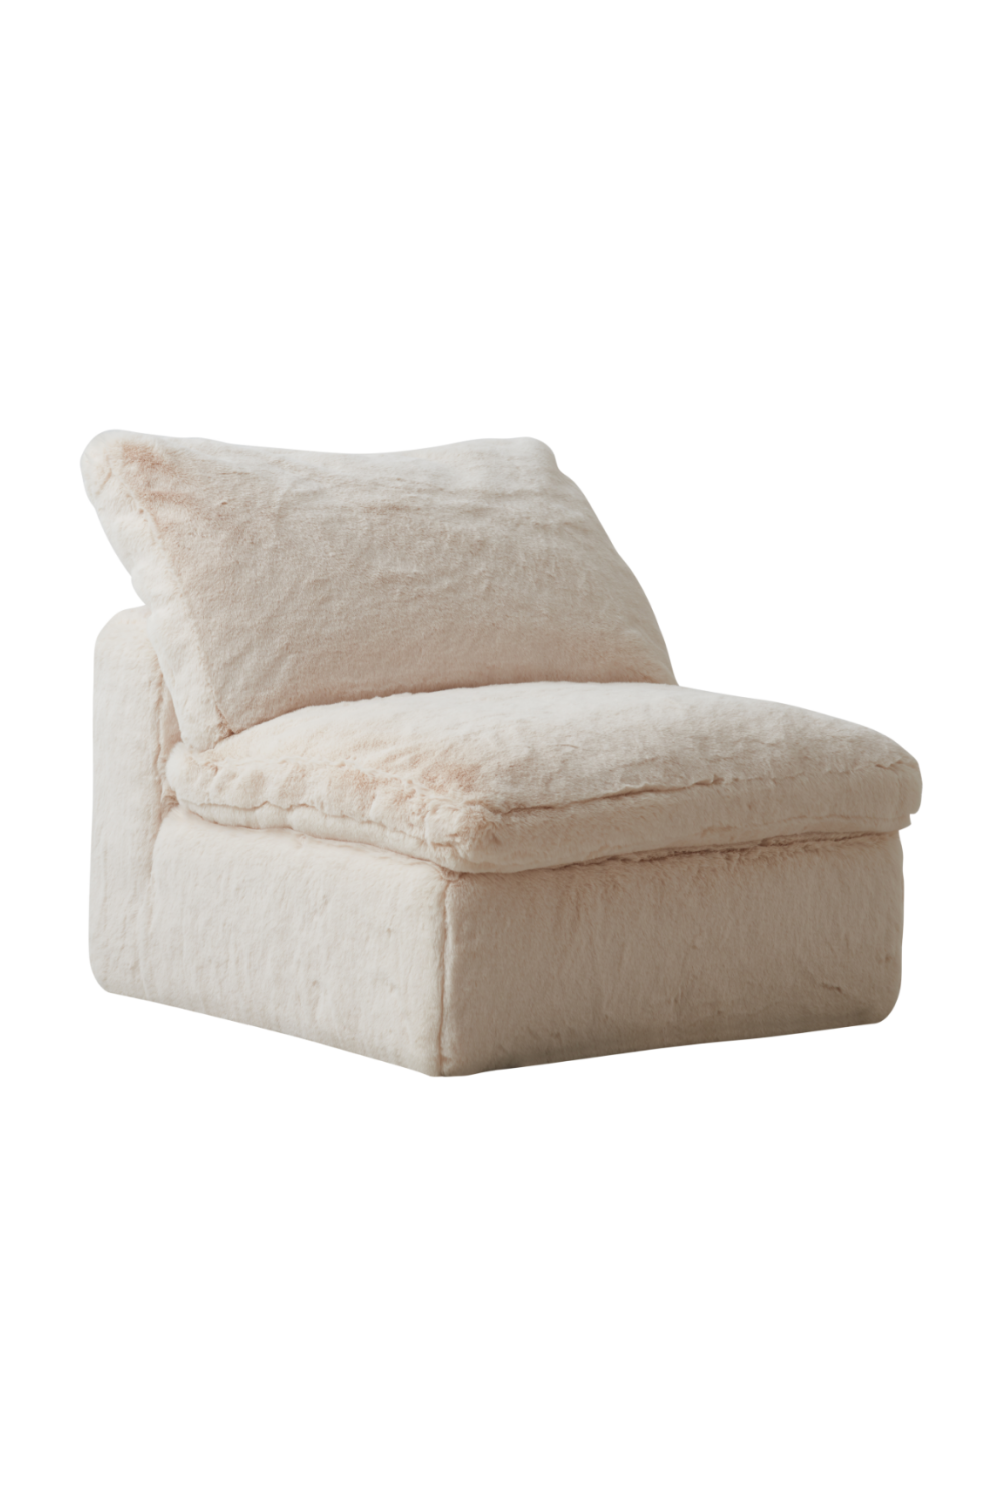 Cream Fur Sectional Sofa | Andrew Martin Truman Junior | Oroa.com